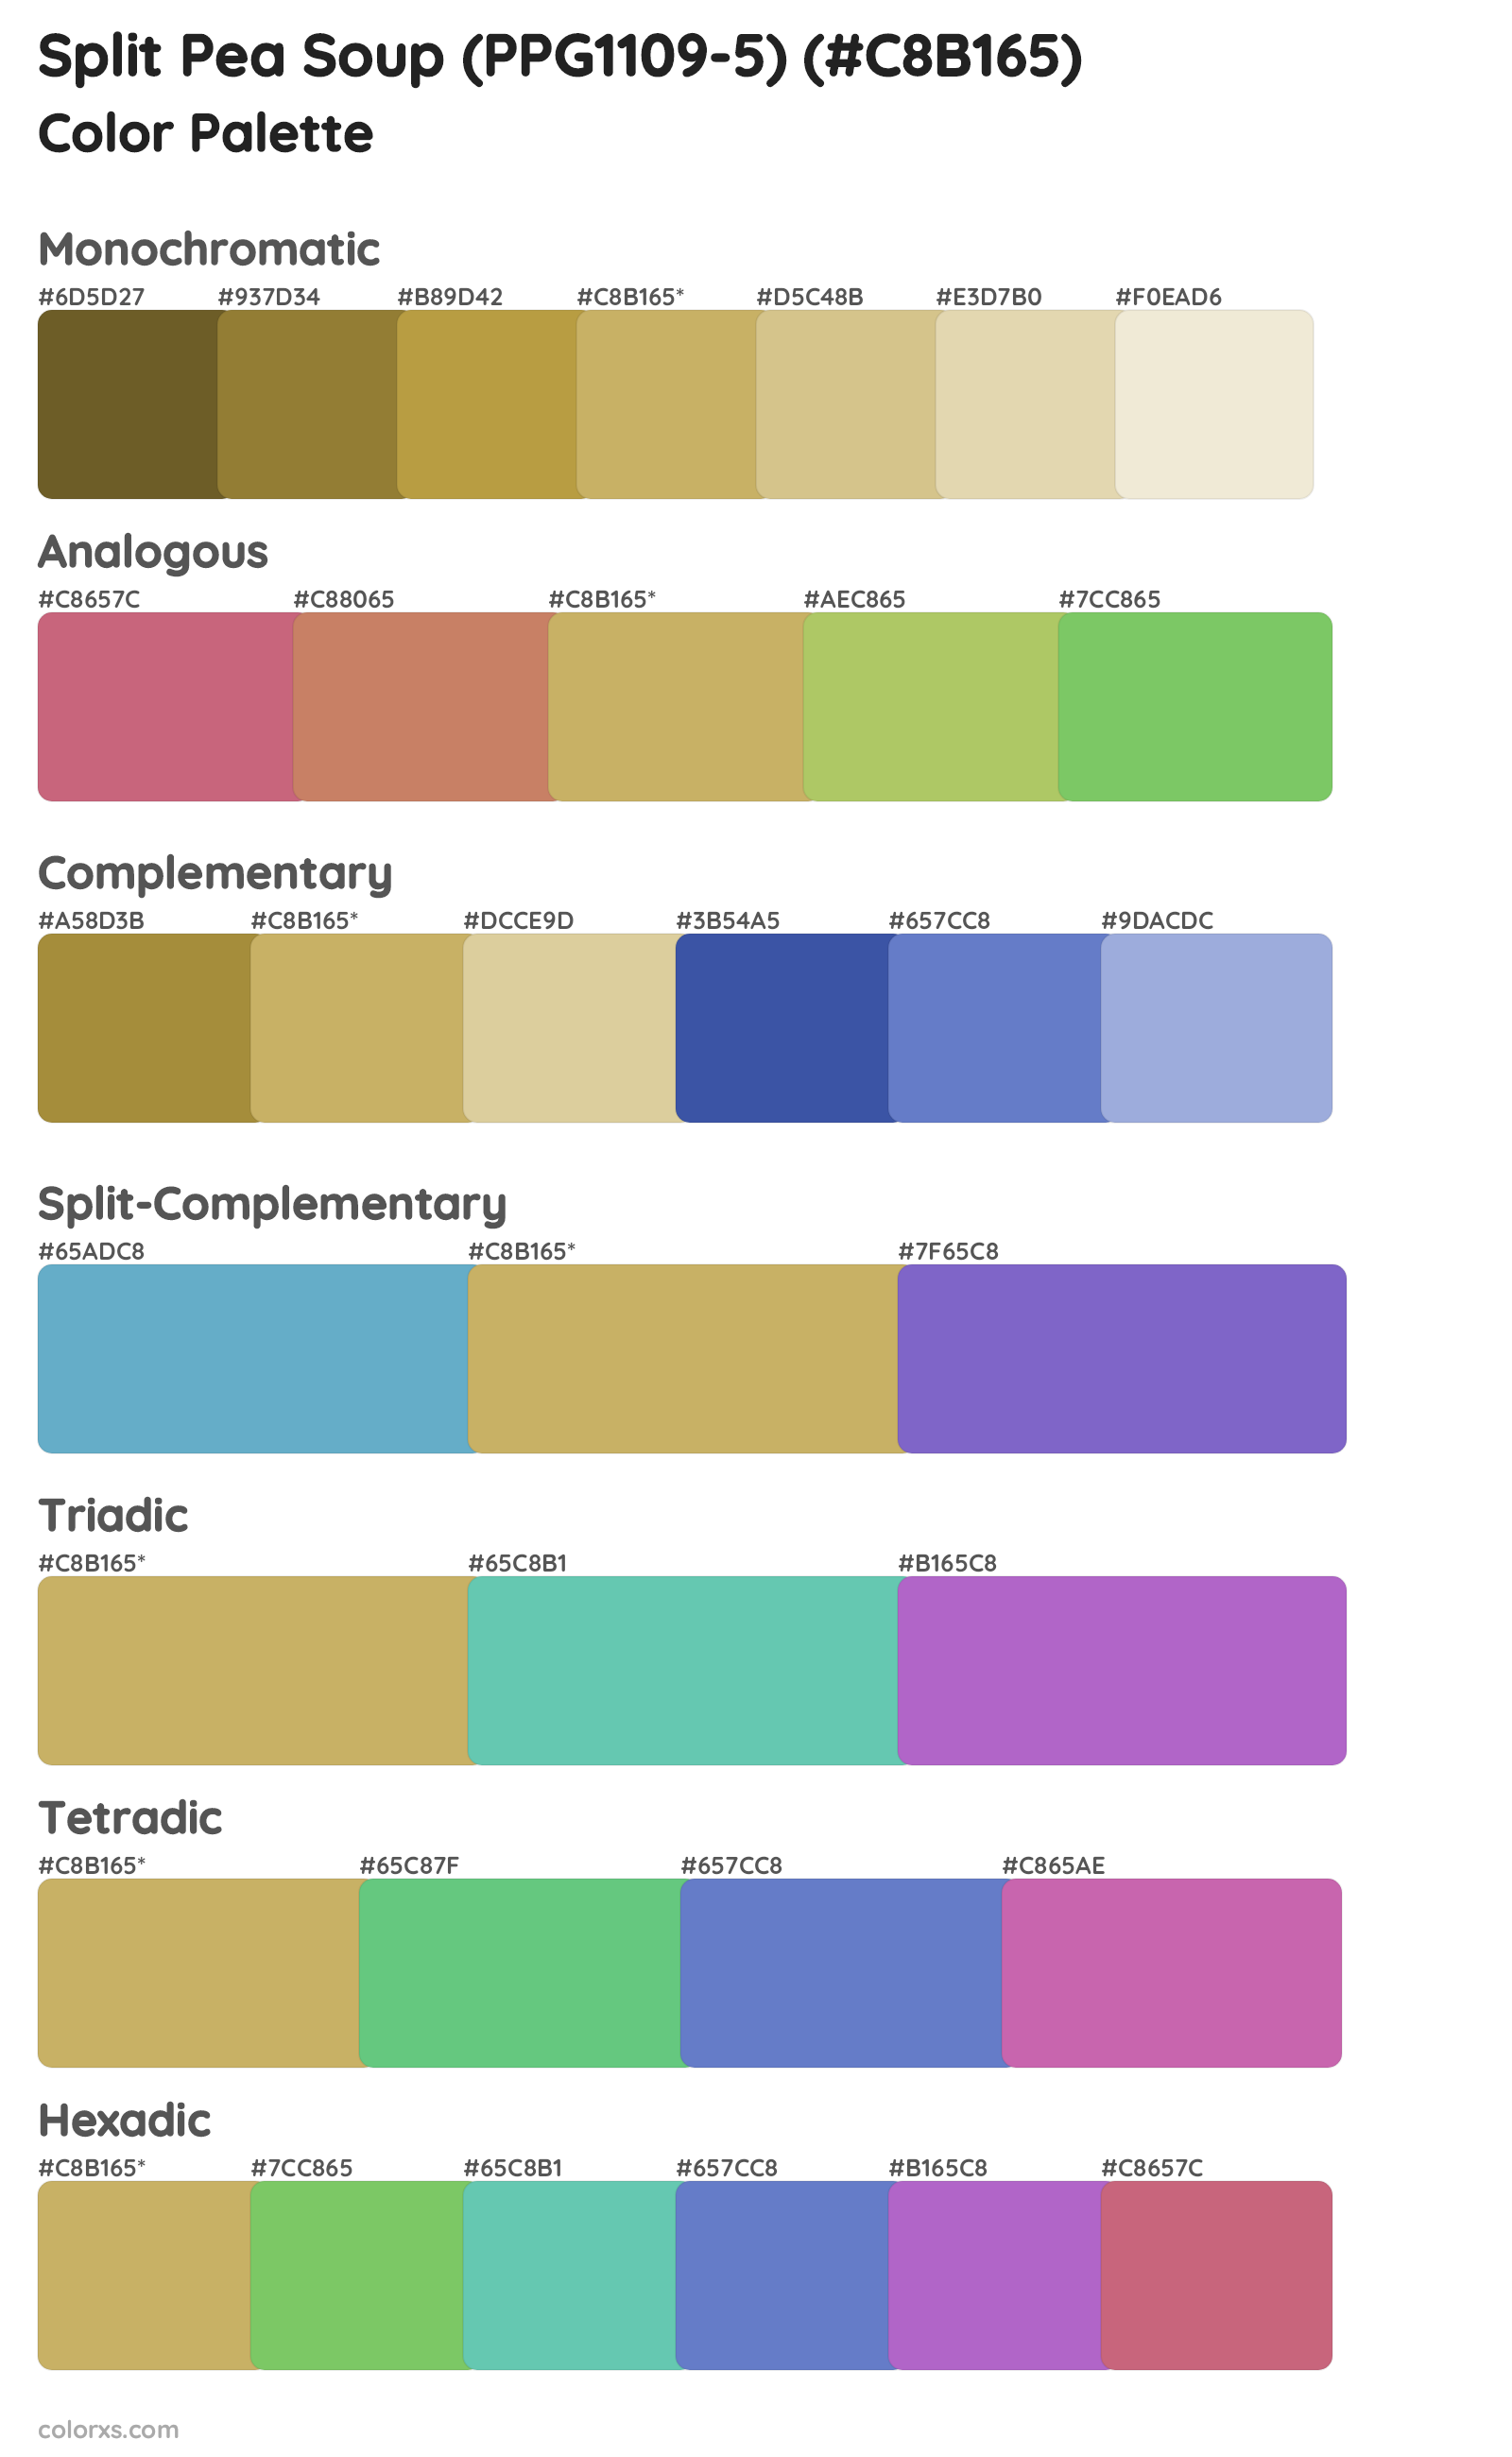 Split Pea Soup (PPG1109-5) Color Scheme Palettes